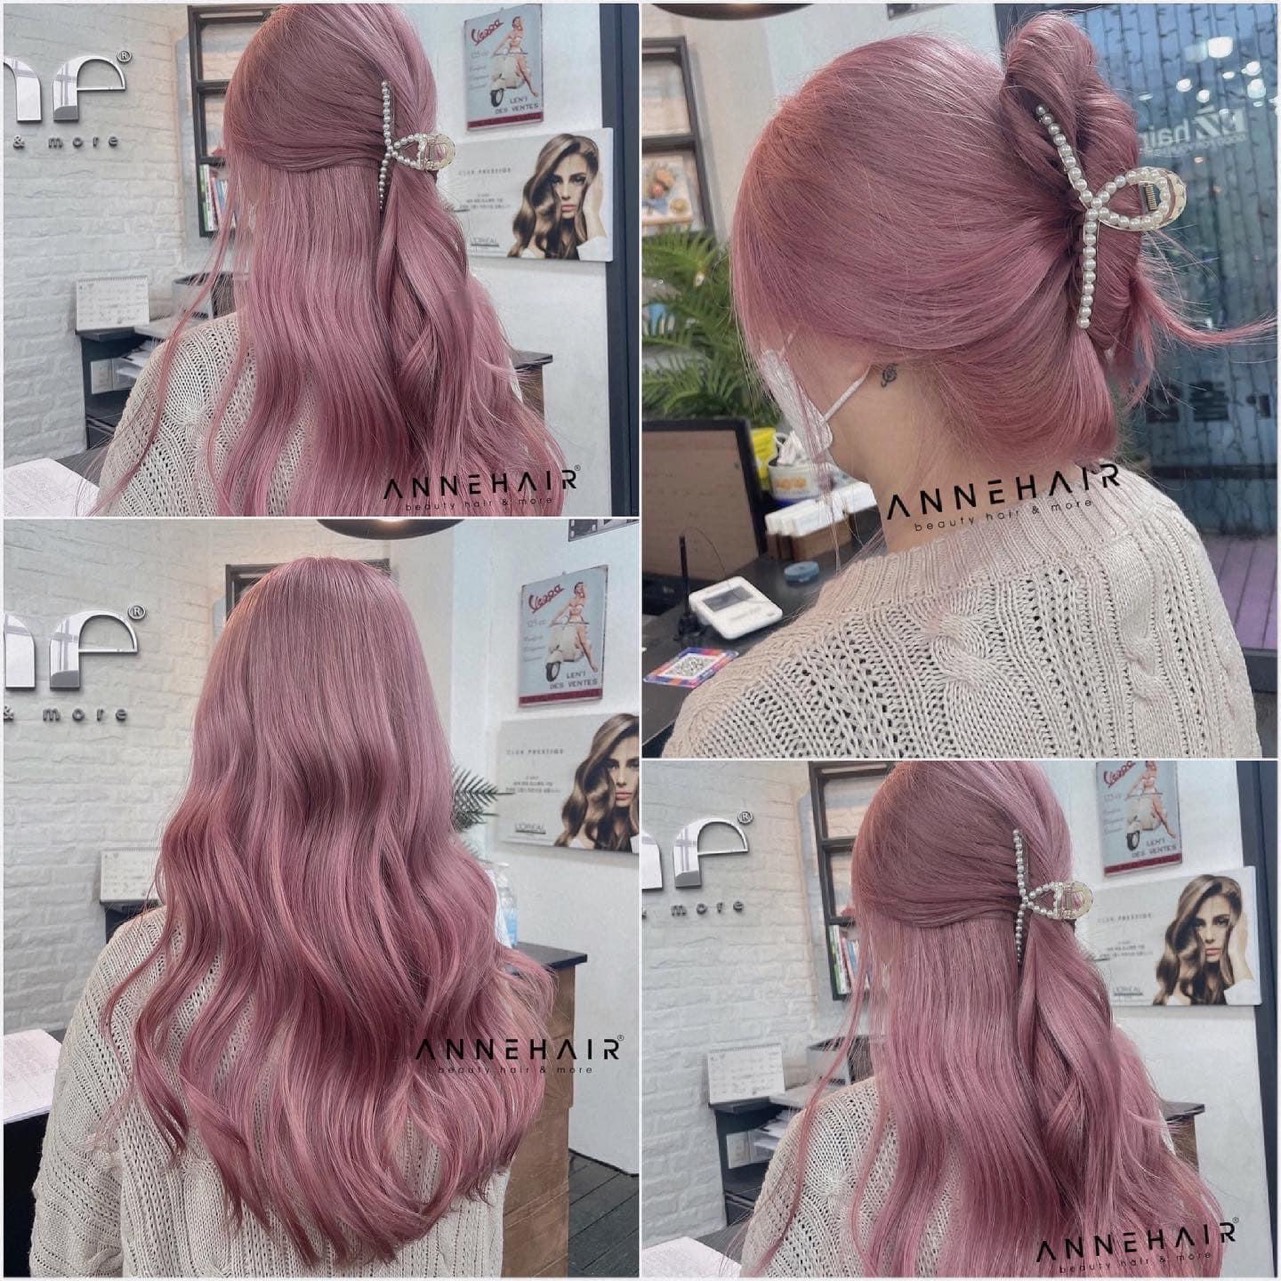 Thuốc nhuộm tóc màu tím hồng là sản phẩm không thể thiếu trong bộ sưu tập làm đẹp của bạn. Với độ bền màu cao và chất lượng tốt, bạn sẽ yên tâm rằng tóc của bạn sẽ luôn tươi trẻ và bắt mắt.